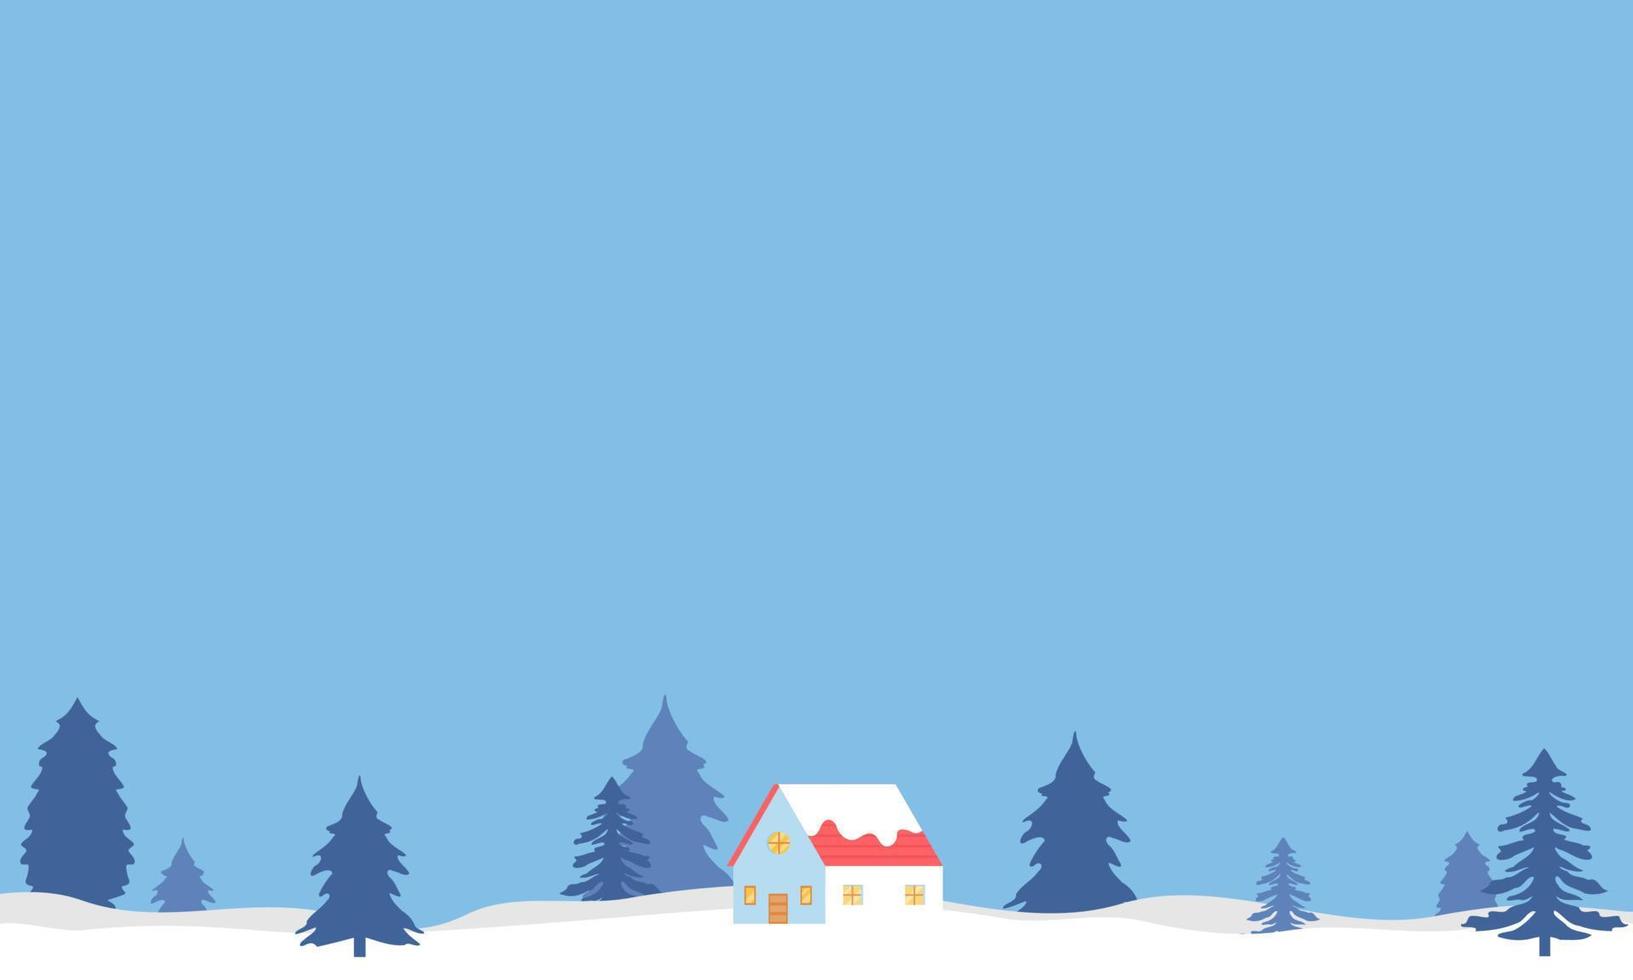 inverno paesaggio illustrazione con pino alberi, nuvole, e Casa. inverno sfondo con piatto stile design. inverno illustrazione con cartone animato stile. Ciao inverno. vettore